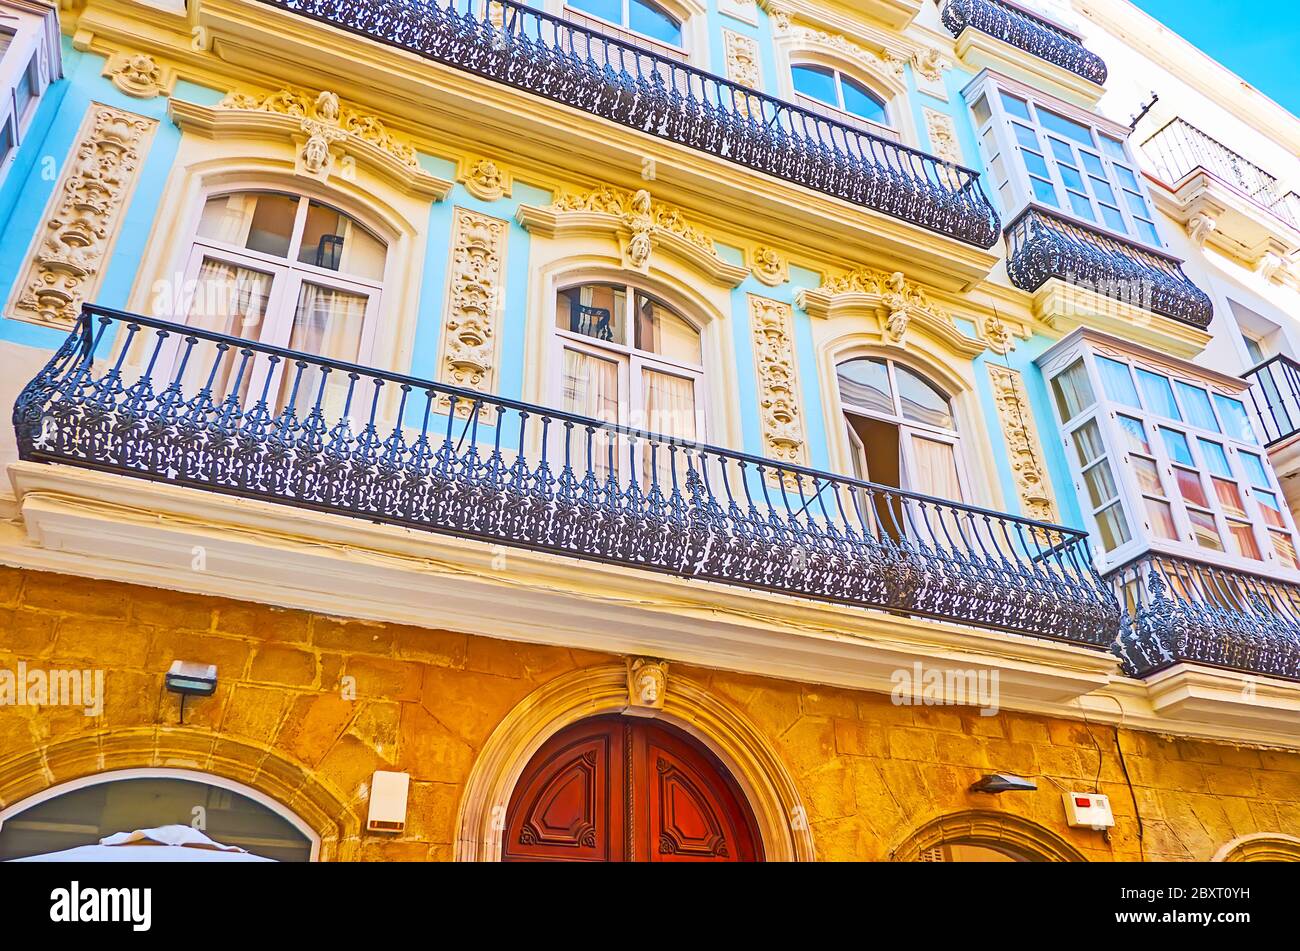 Die kunstvolle Fassade des historischen Gebäudes in der Calle Ancha ist mit Gipsreliefs, Wandskulpturen und einem spitzenartigen gusseisernen Balkongrill dekoriert Stockfoto